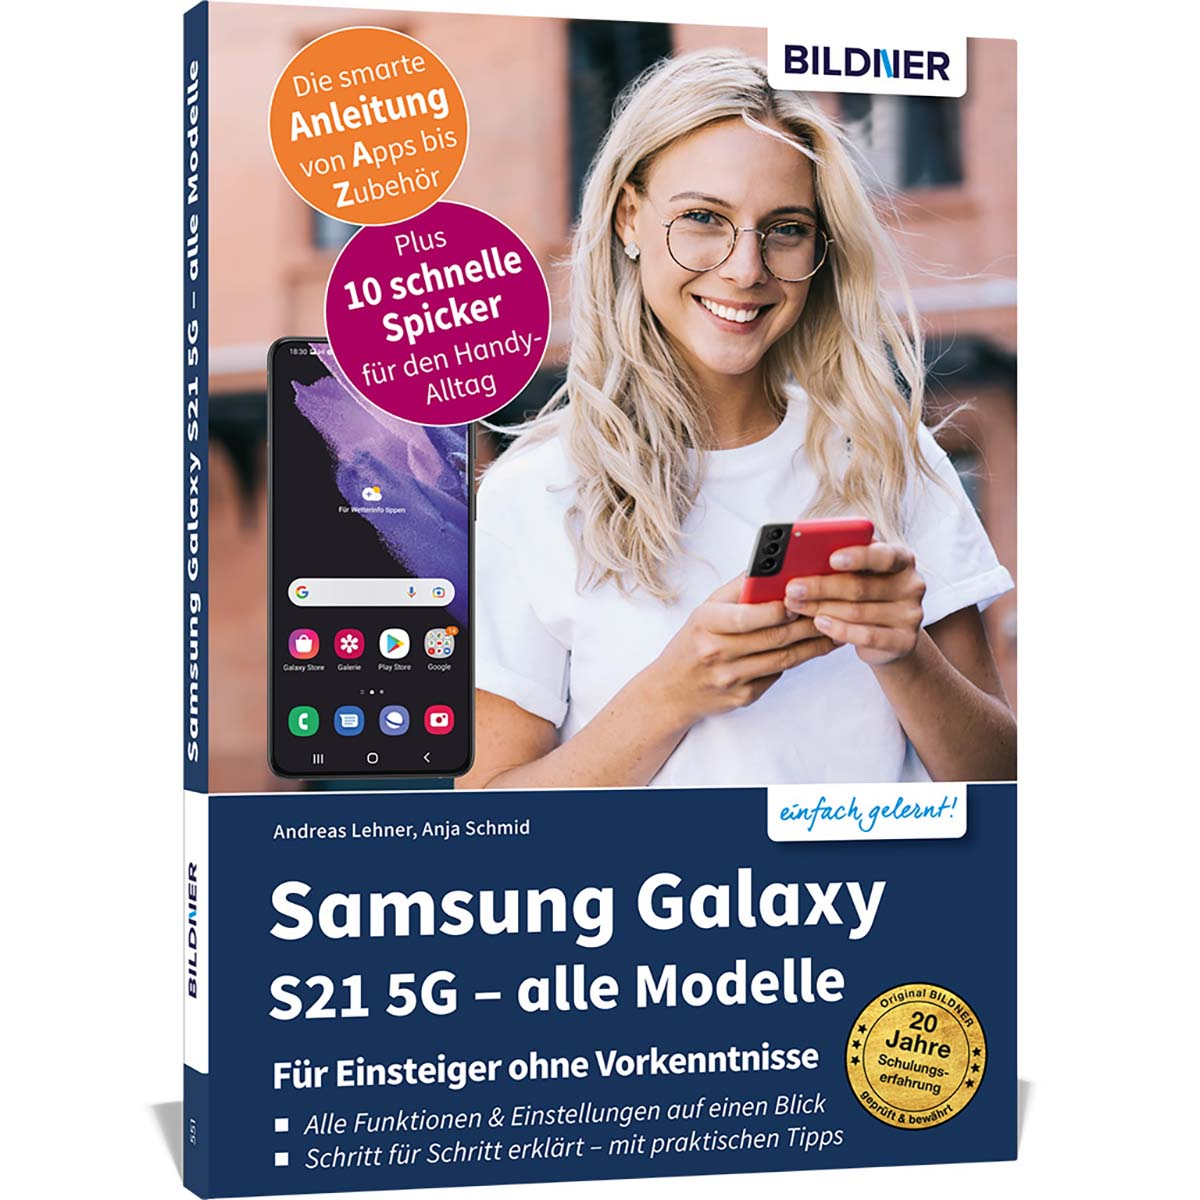 Samsung Galaxy alle S21 Modelle 5G -